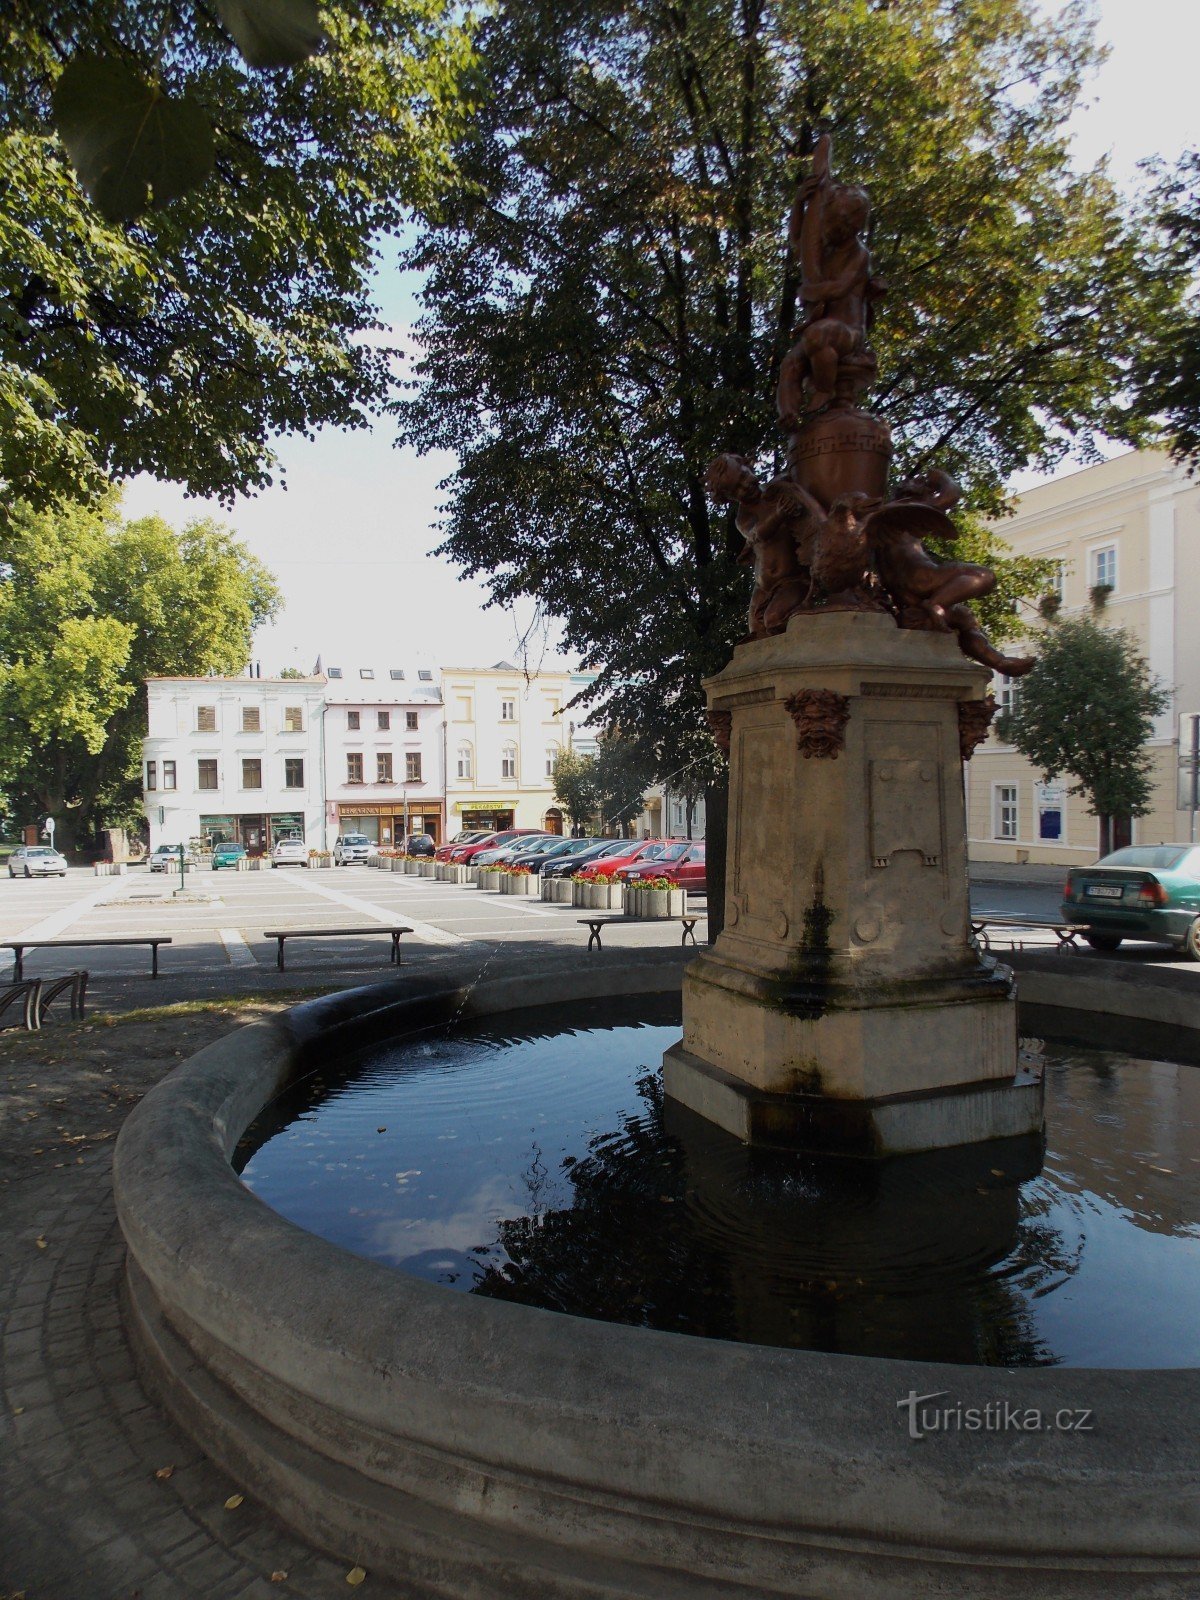 A fonte - a característica dominante da Praça Masaryk em Odary